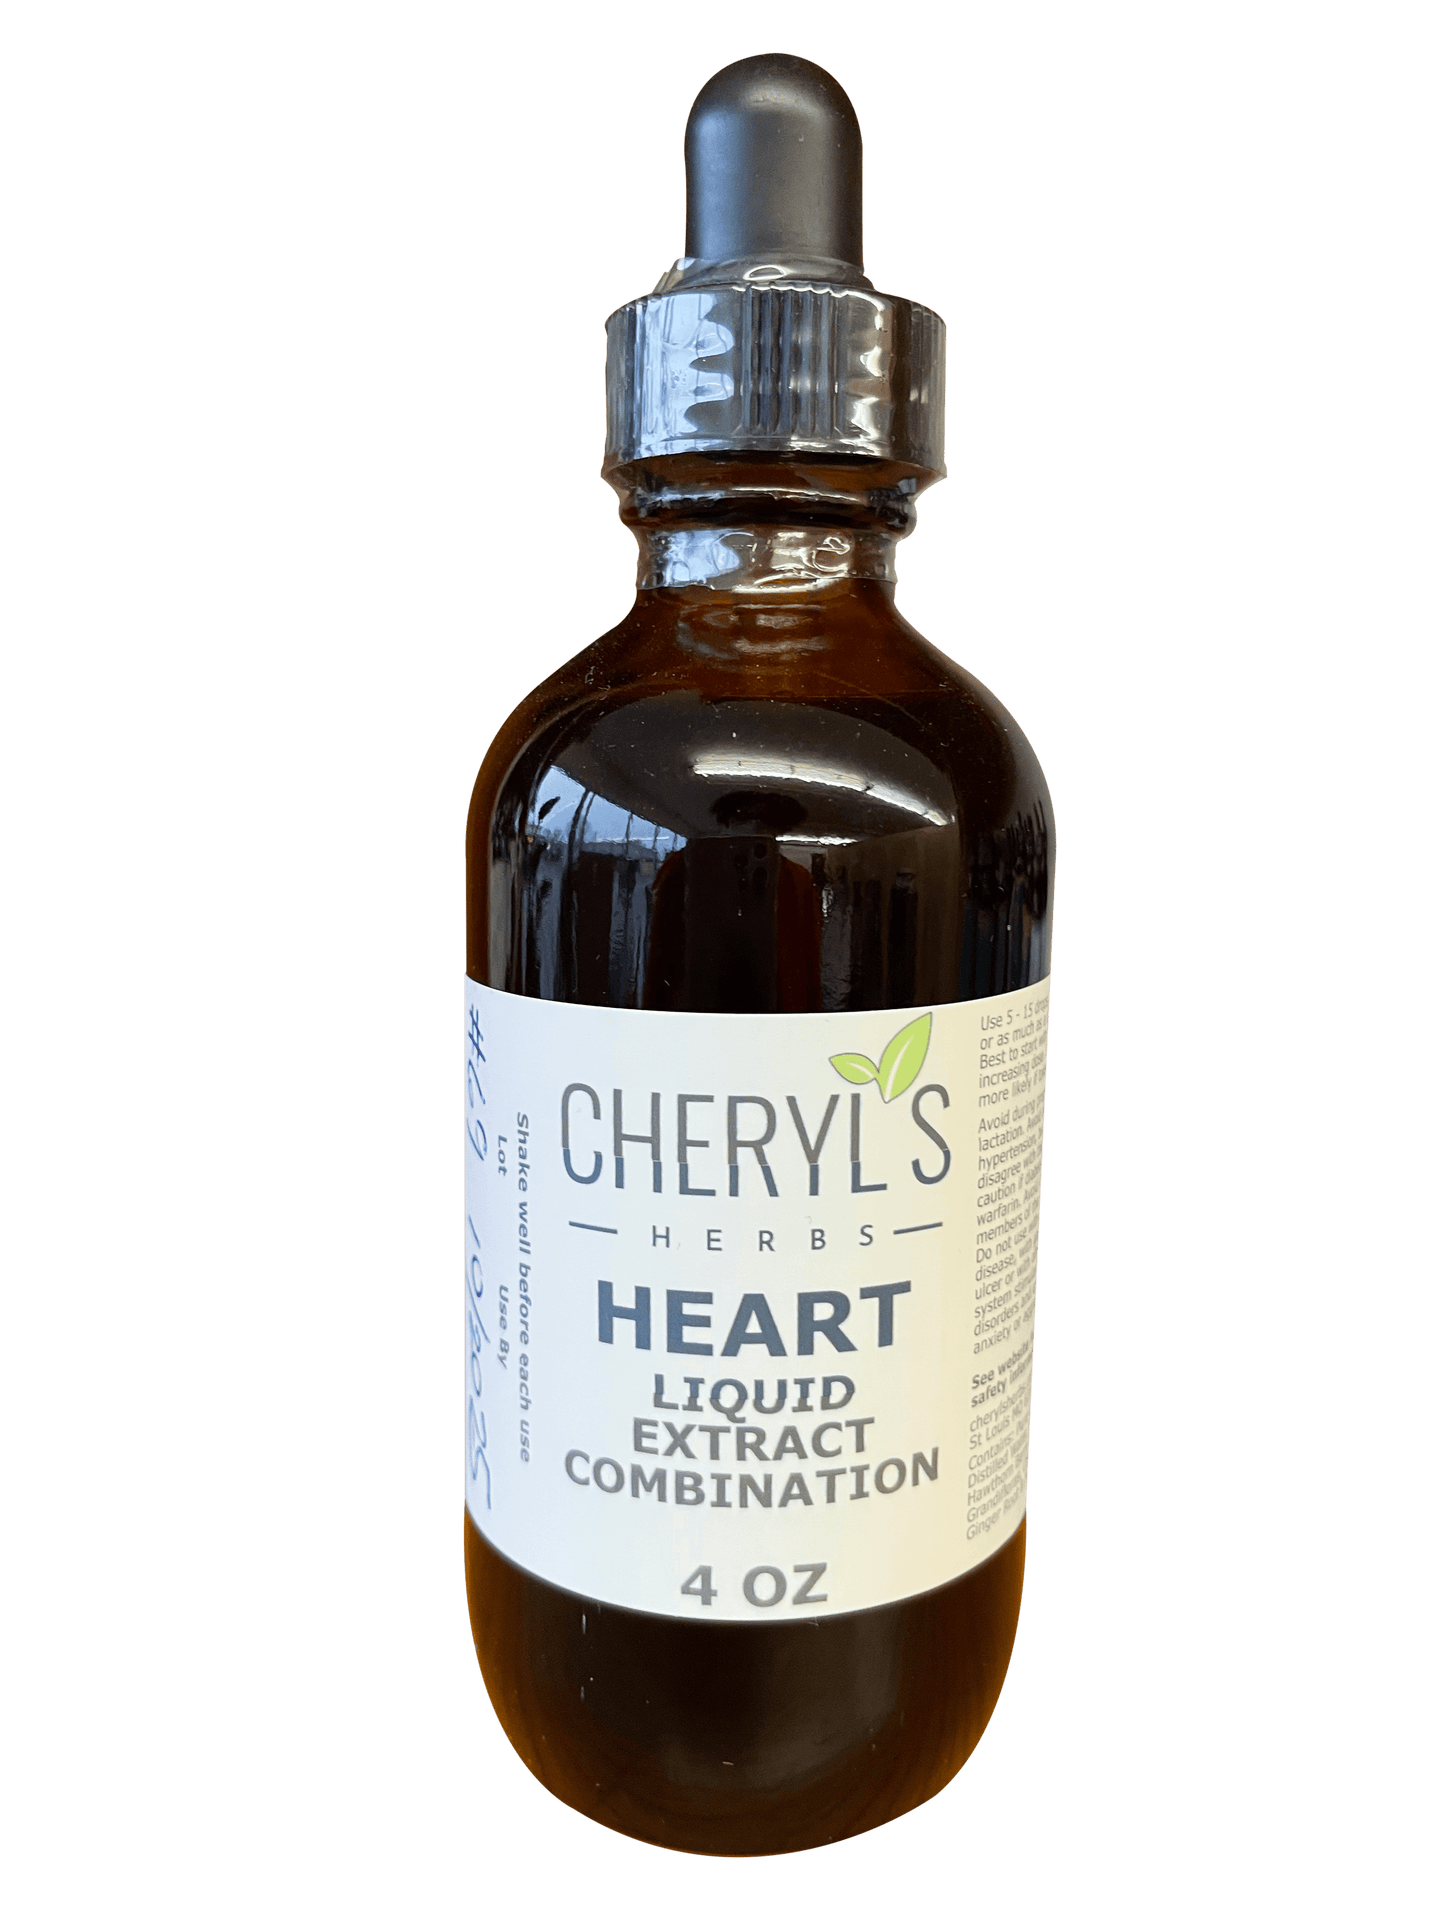 HEART LIQUID EXTRACT COMBINATION - Cheryls Herbs